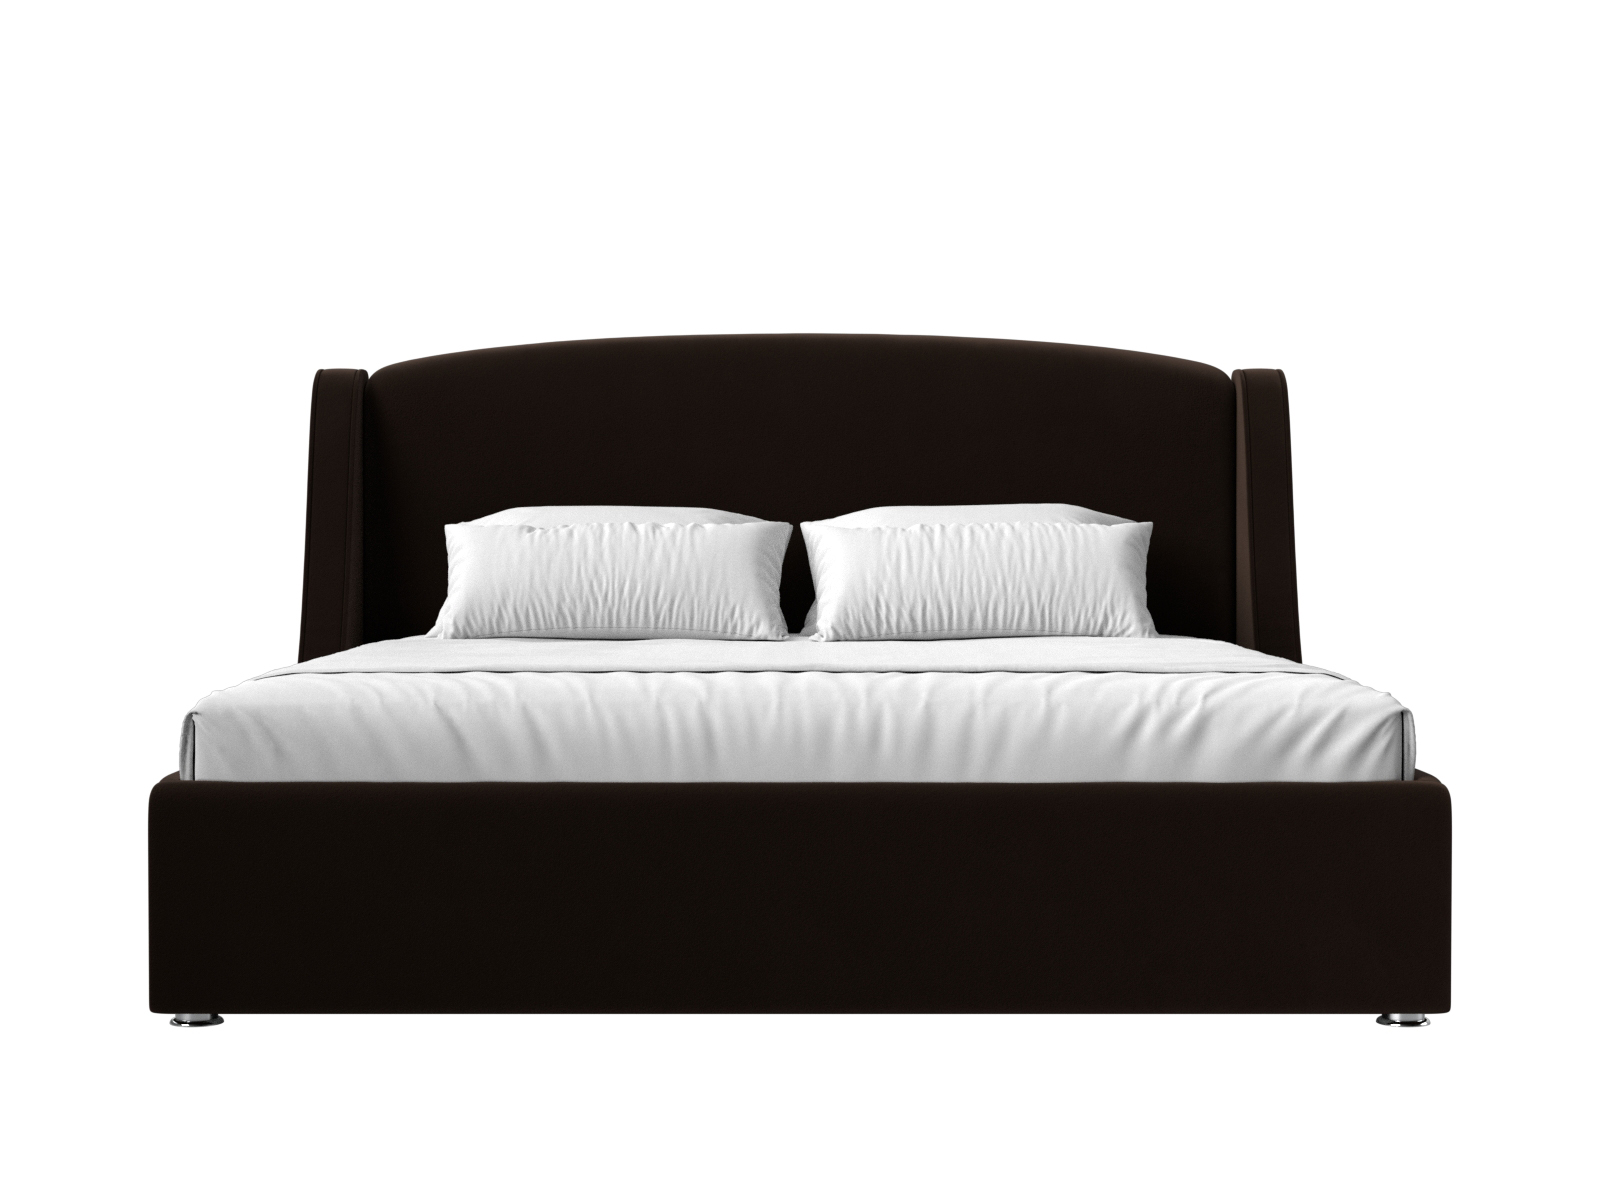 Интерьерная кровать Лотос 160 (Коричневый)